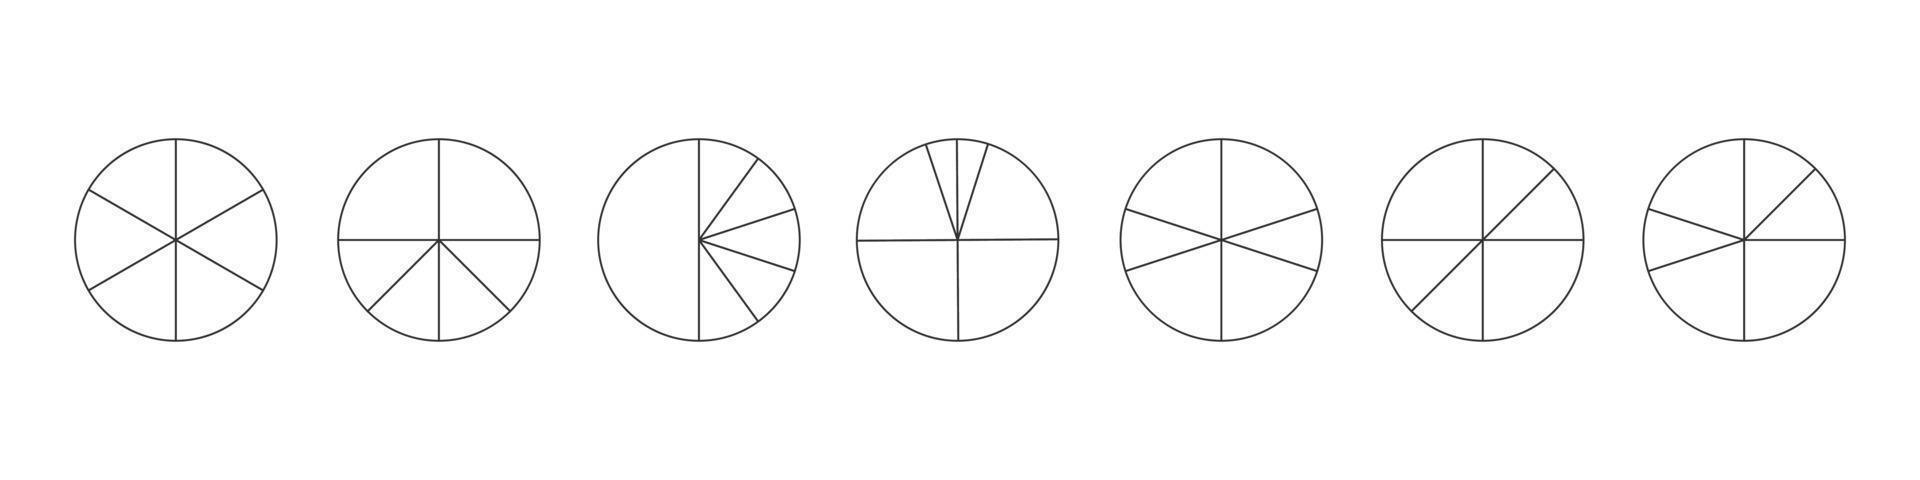 delinear círculos separados en 6 segmentos aislados sobre fondo blanco. formas redondas de pastel o pizza cortadas en diferentes seis rebanadas. ejemplos simples de infografia estadistica vector